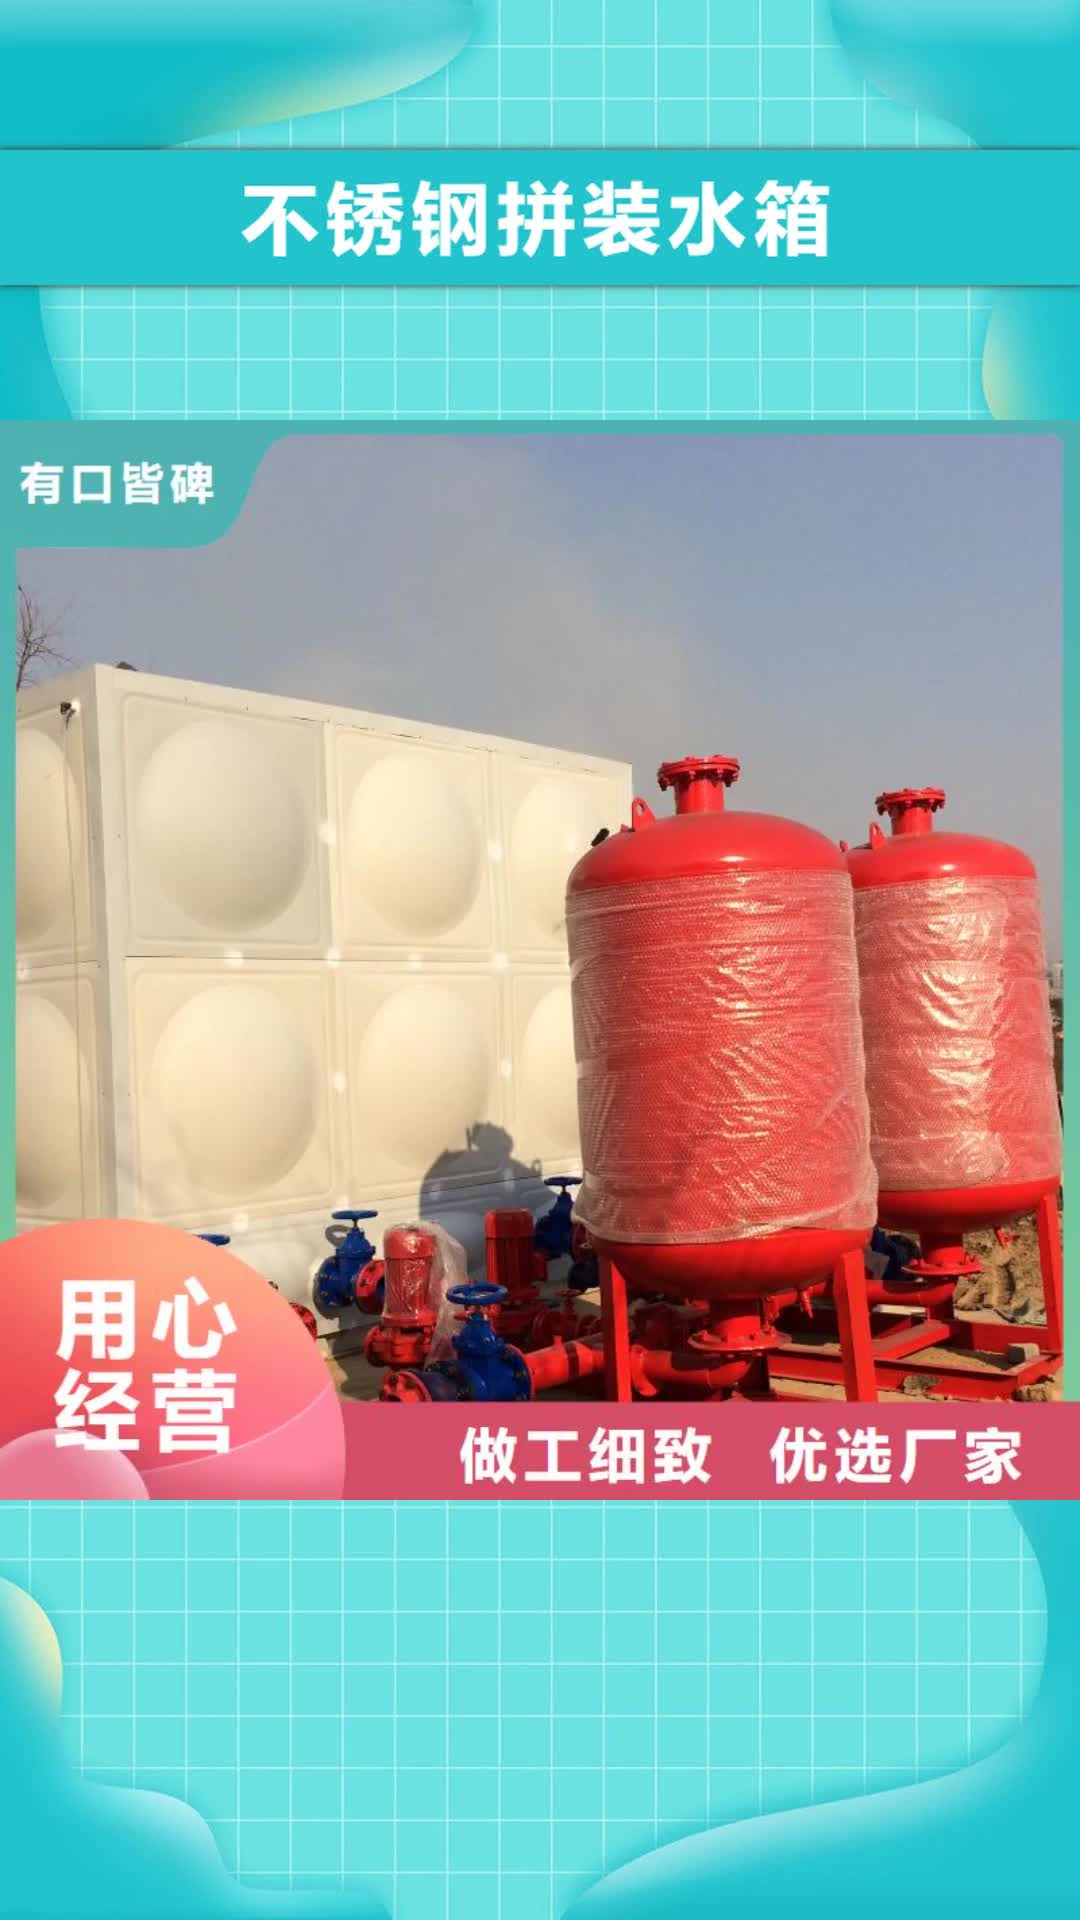 锡林郭勒【不锈钢拼装水箱】,消防泵专业生产N年